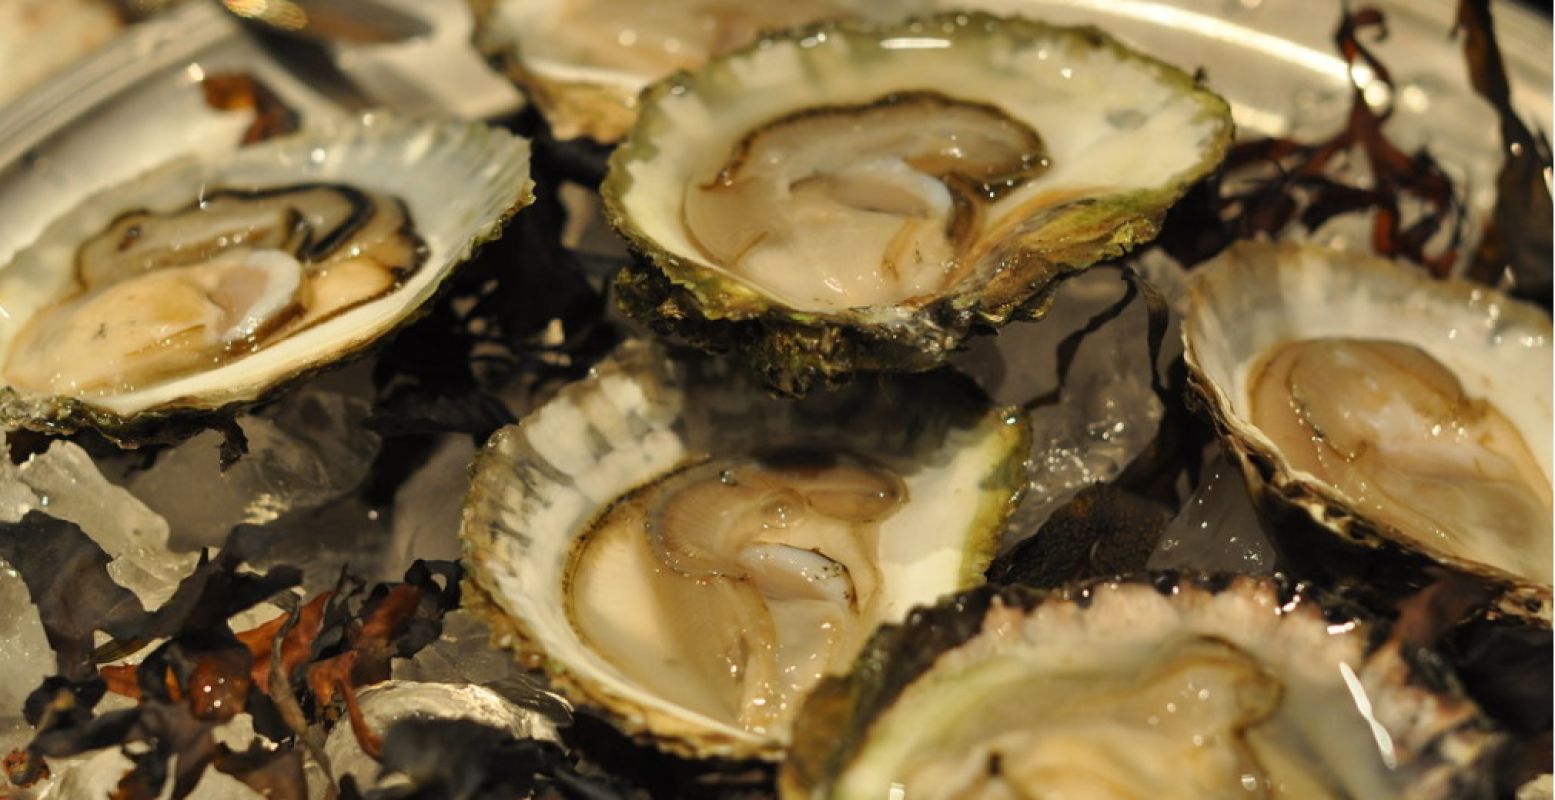 'Oysters'. Fotograaf: cwasteson. Licentie: Sommige rechten voorbehouden. Bron: Flickr.com